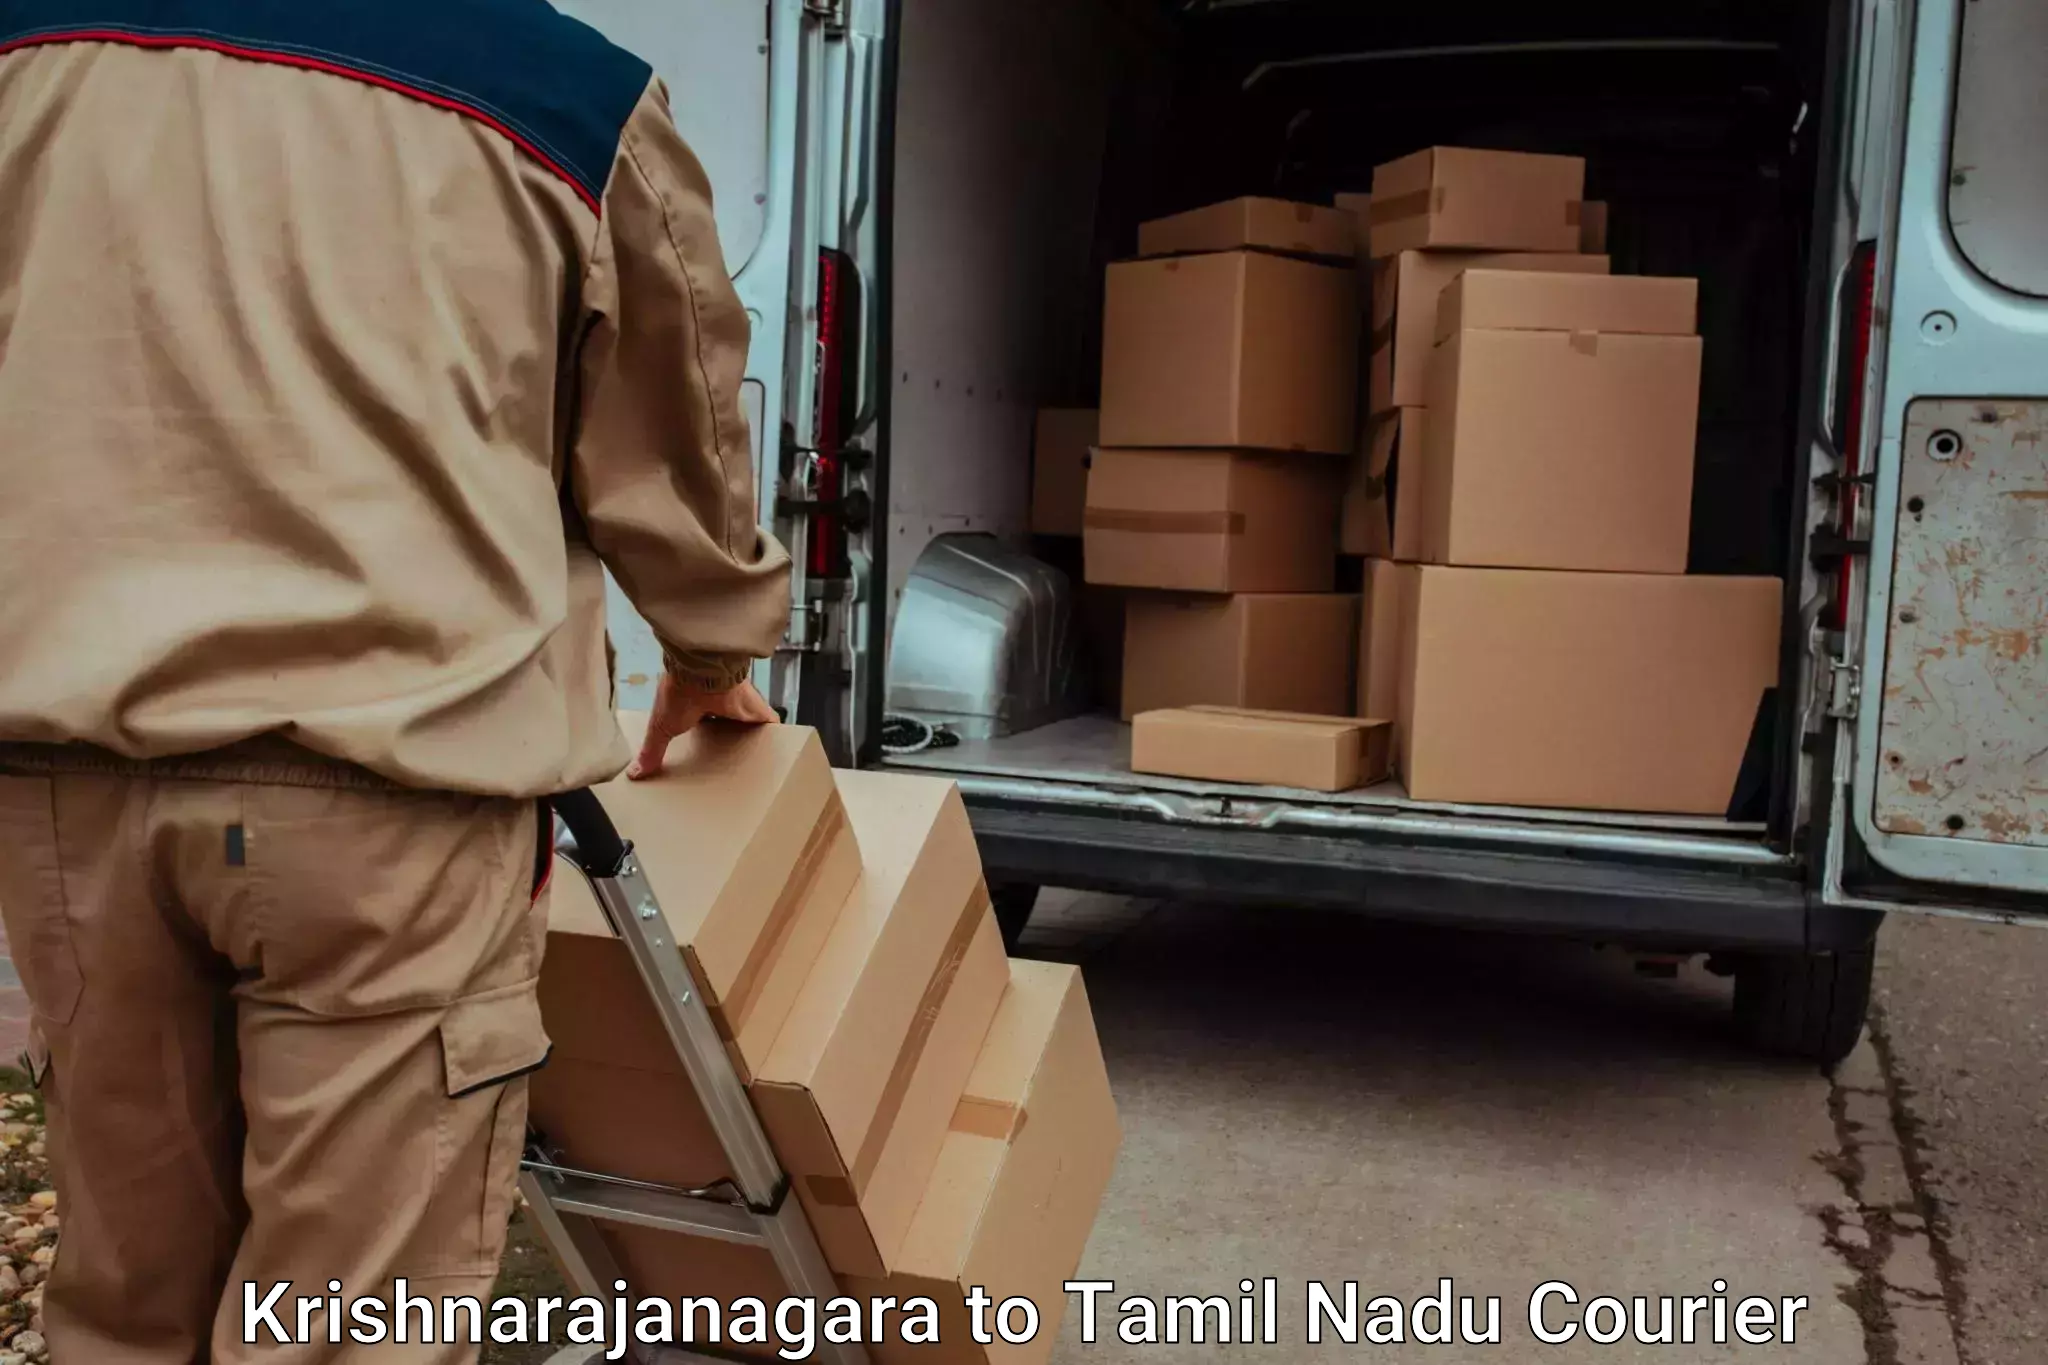 Baggage transport network Krishnarajanagara to Kangeyam